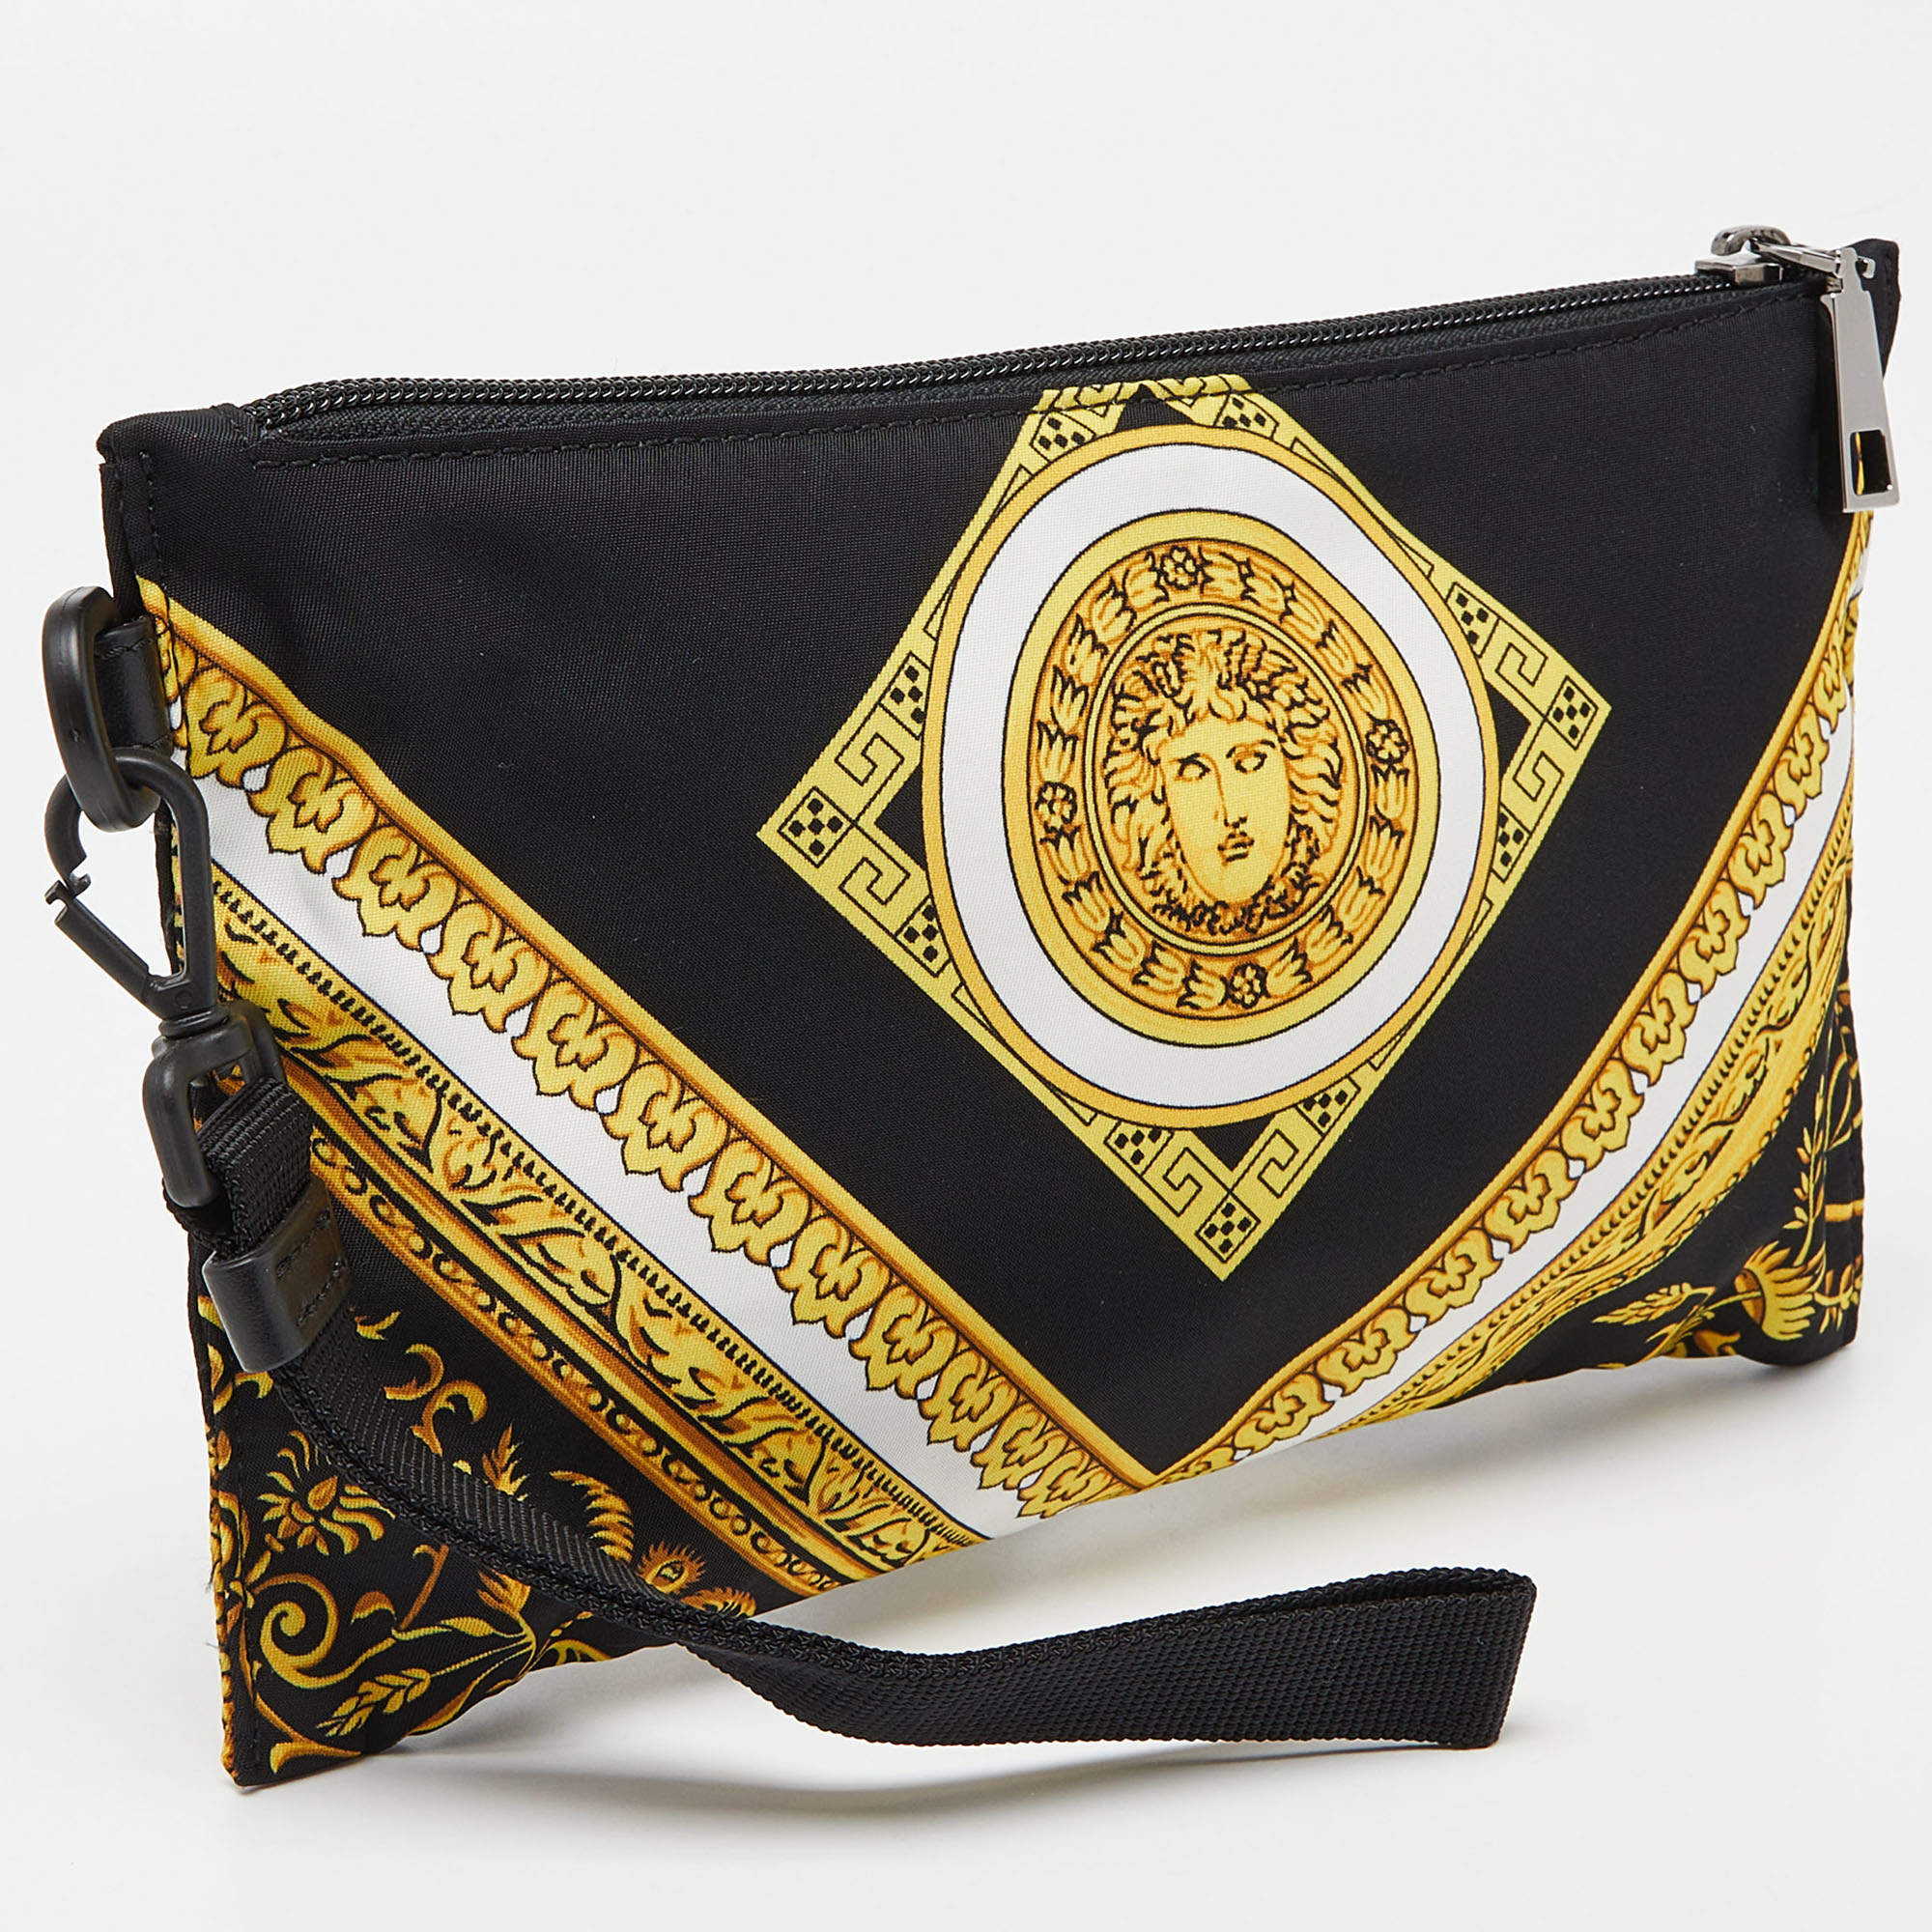 Versace La Medusa Handbag – The Consignment Bar